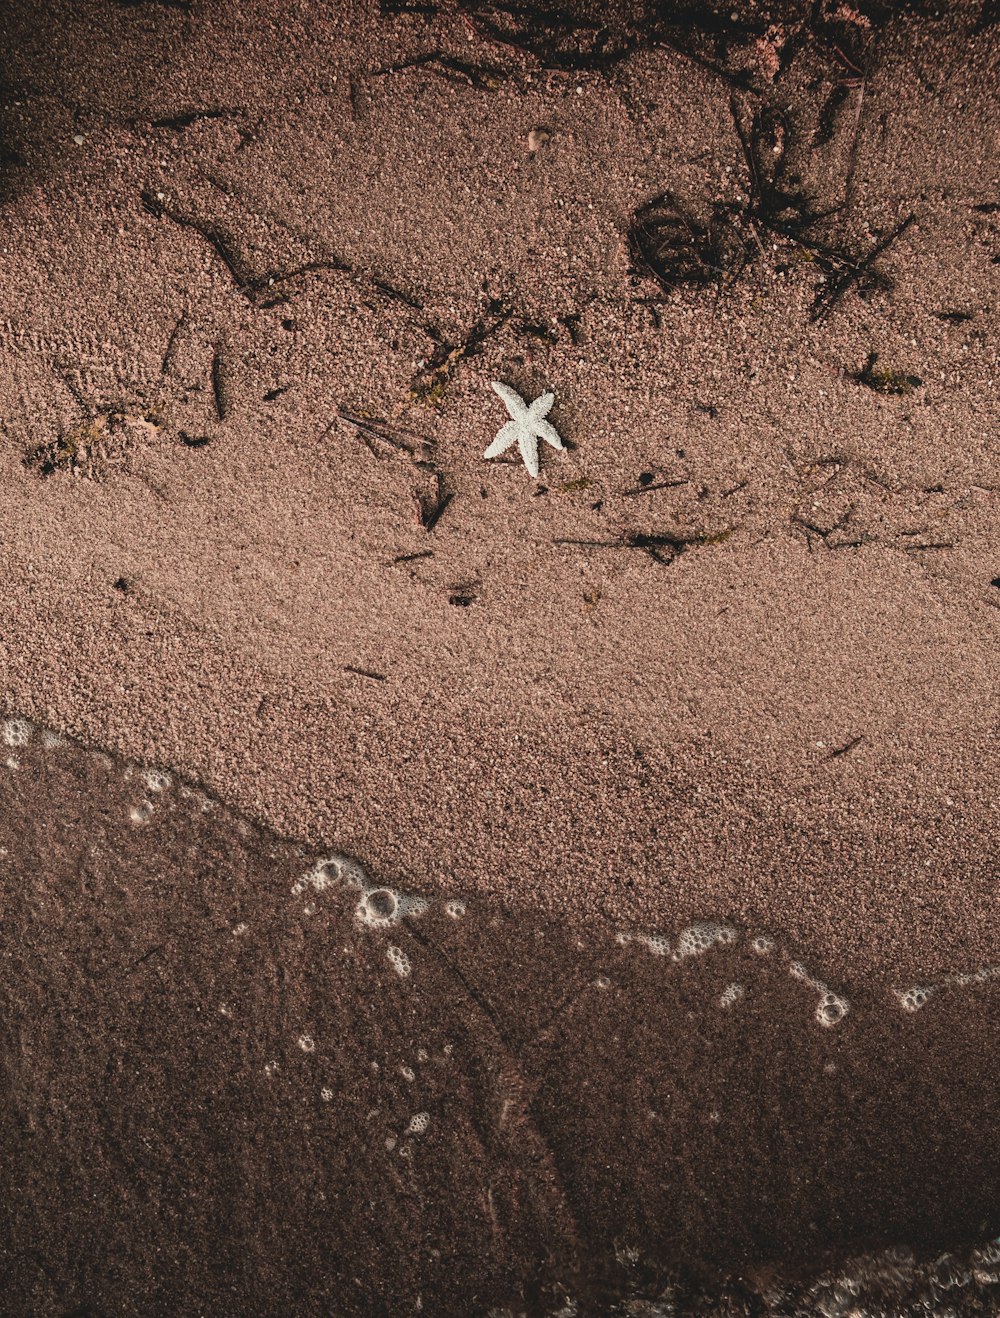 a starfish on a sandy beach near the ocean